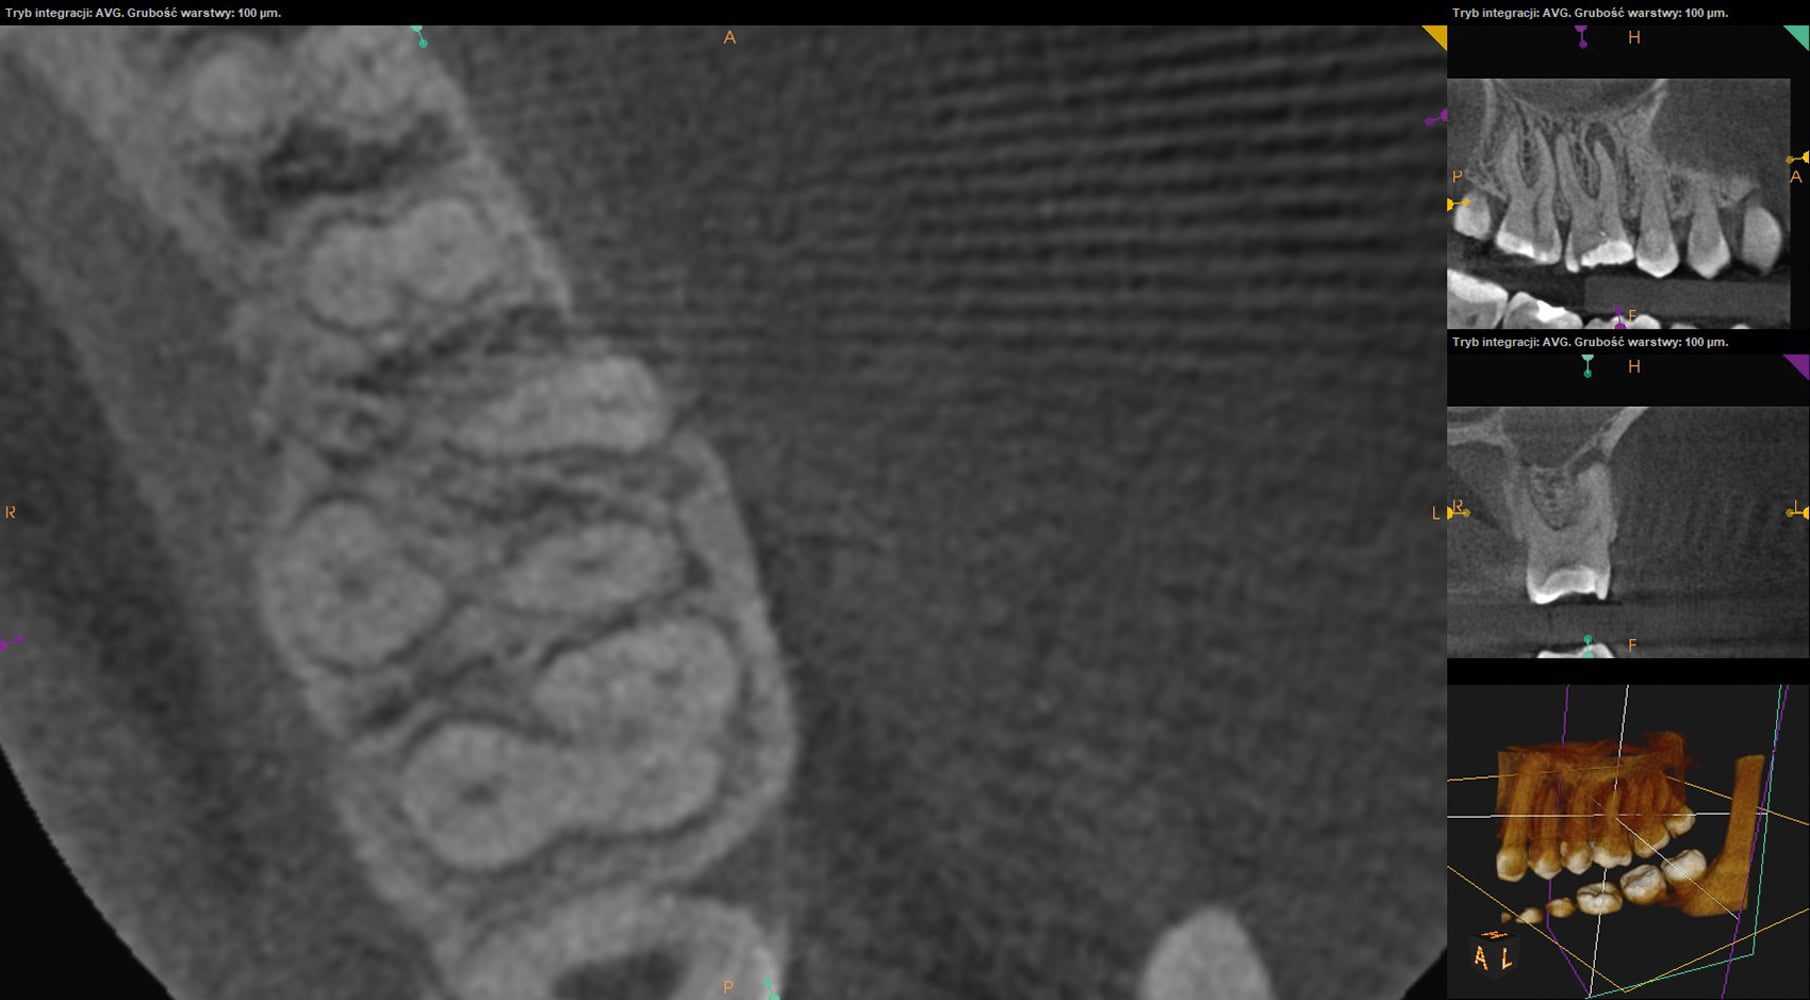 Przypadek 3 | Ryc. 14. Skan z tomografii komputerowej w płaszczyźnie poprzecznej w połowie długości korzenia. W korzeniu mezjalnym widoczne przejaśnienia sugerujące obecność dwóch, osobnych kanałów.